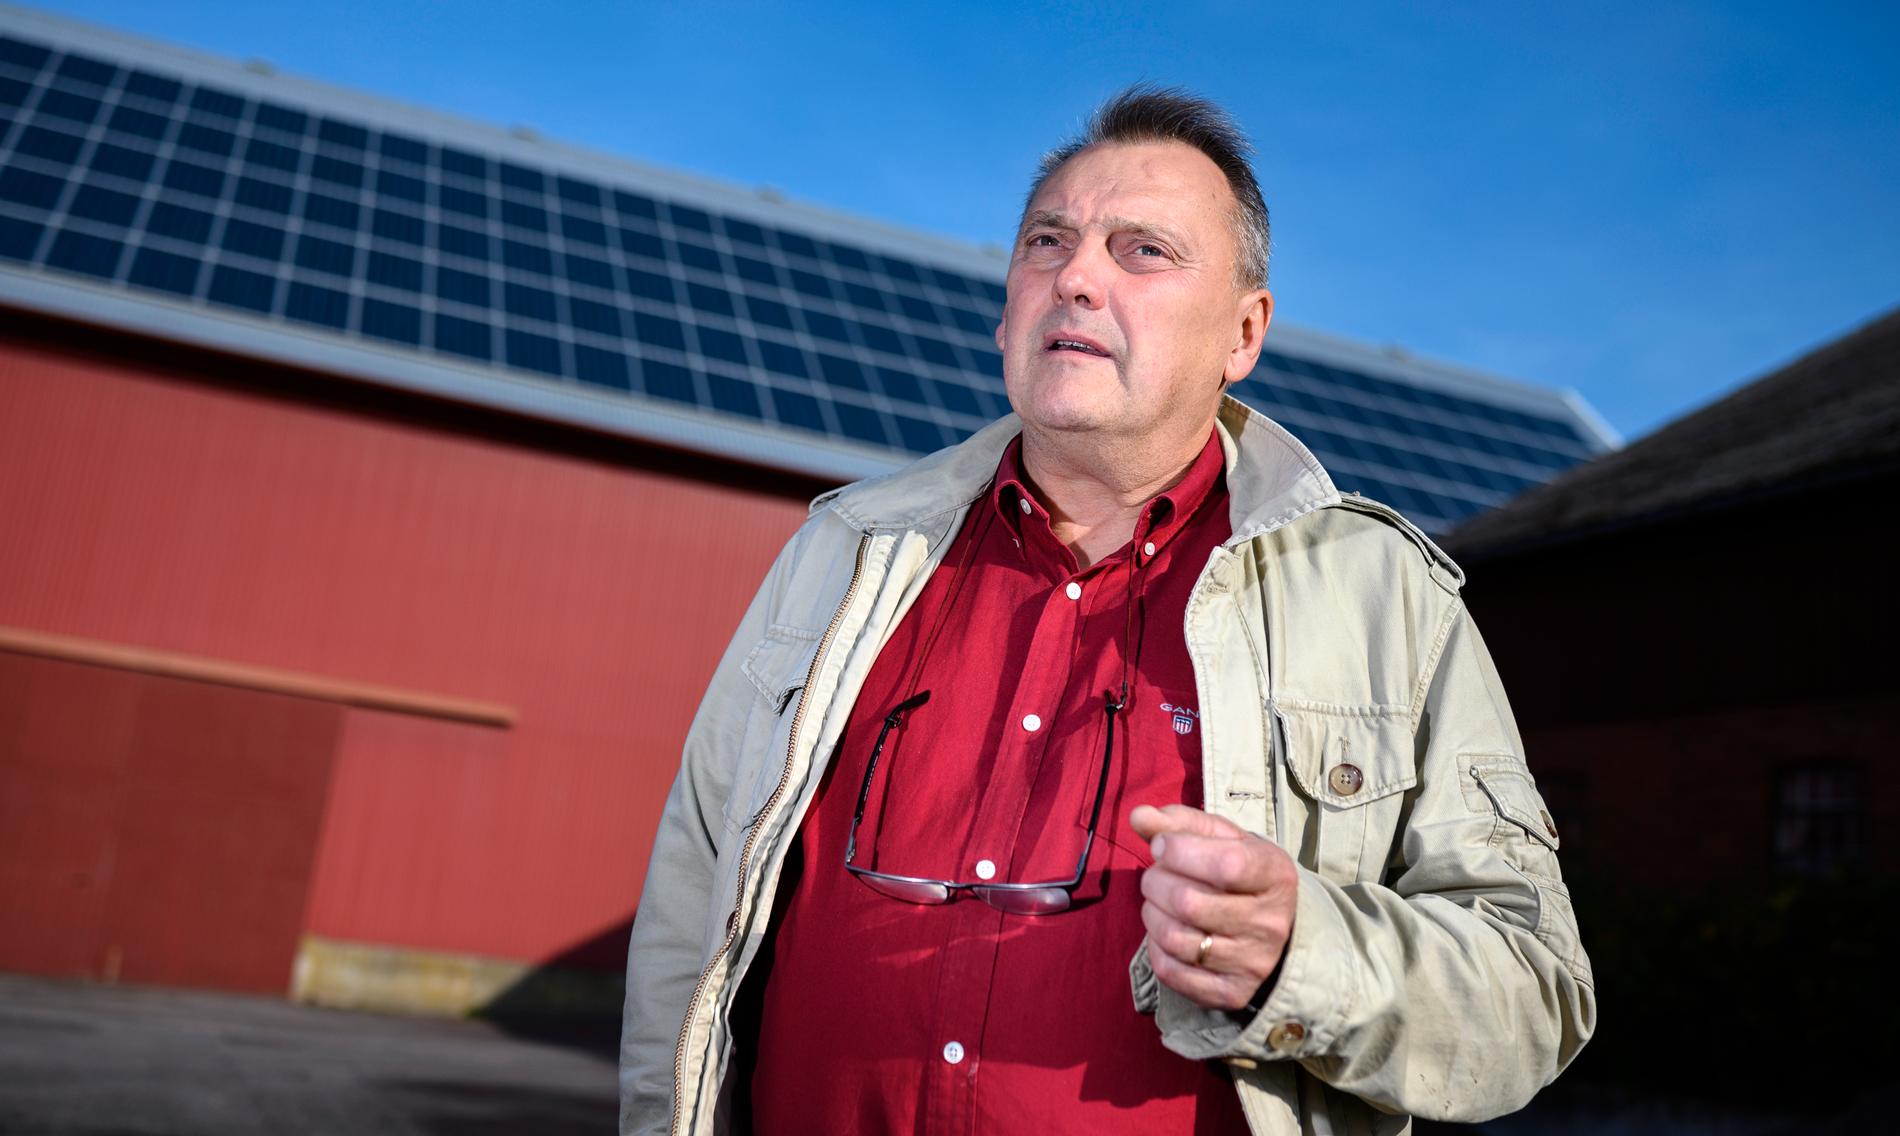 Bo Mårtensson på Brandstad gård utanför Sjöbo tycker det funkar bra med luftburet nät. Han kan tänka sig fiber, men hittills har han klarat att sköta sina företag, sitt lantbruk samt sina solceller utan fiberuppkoppling.